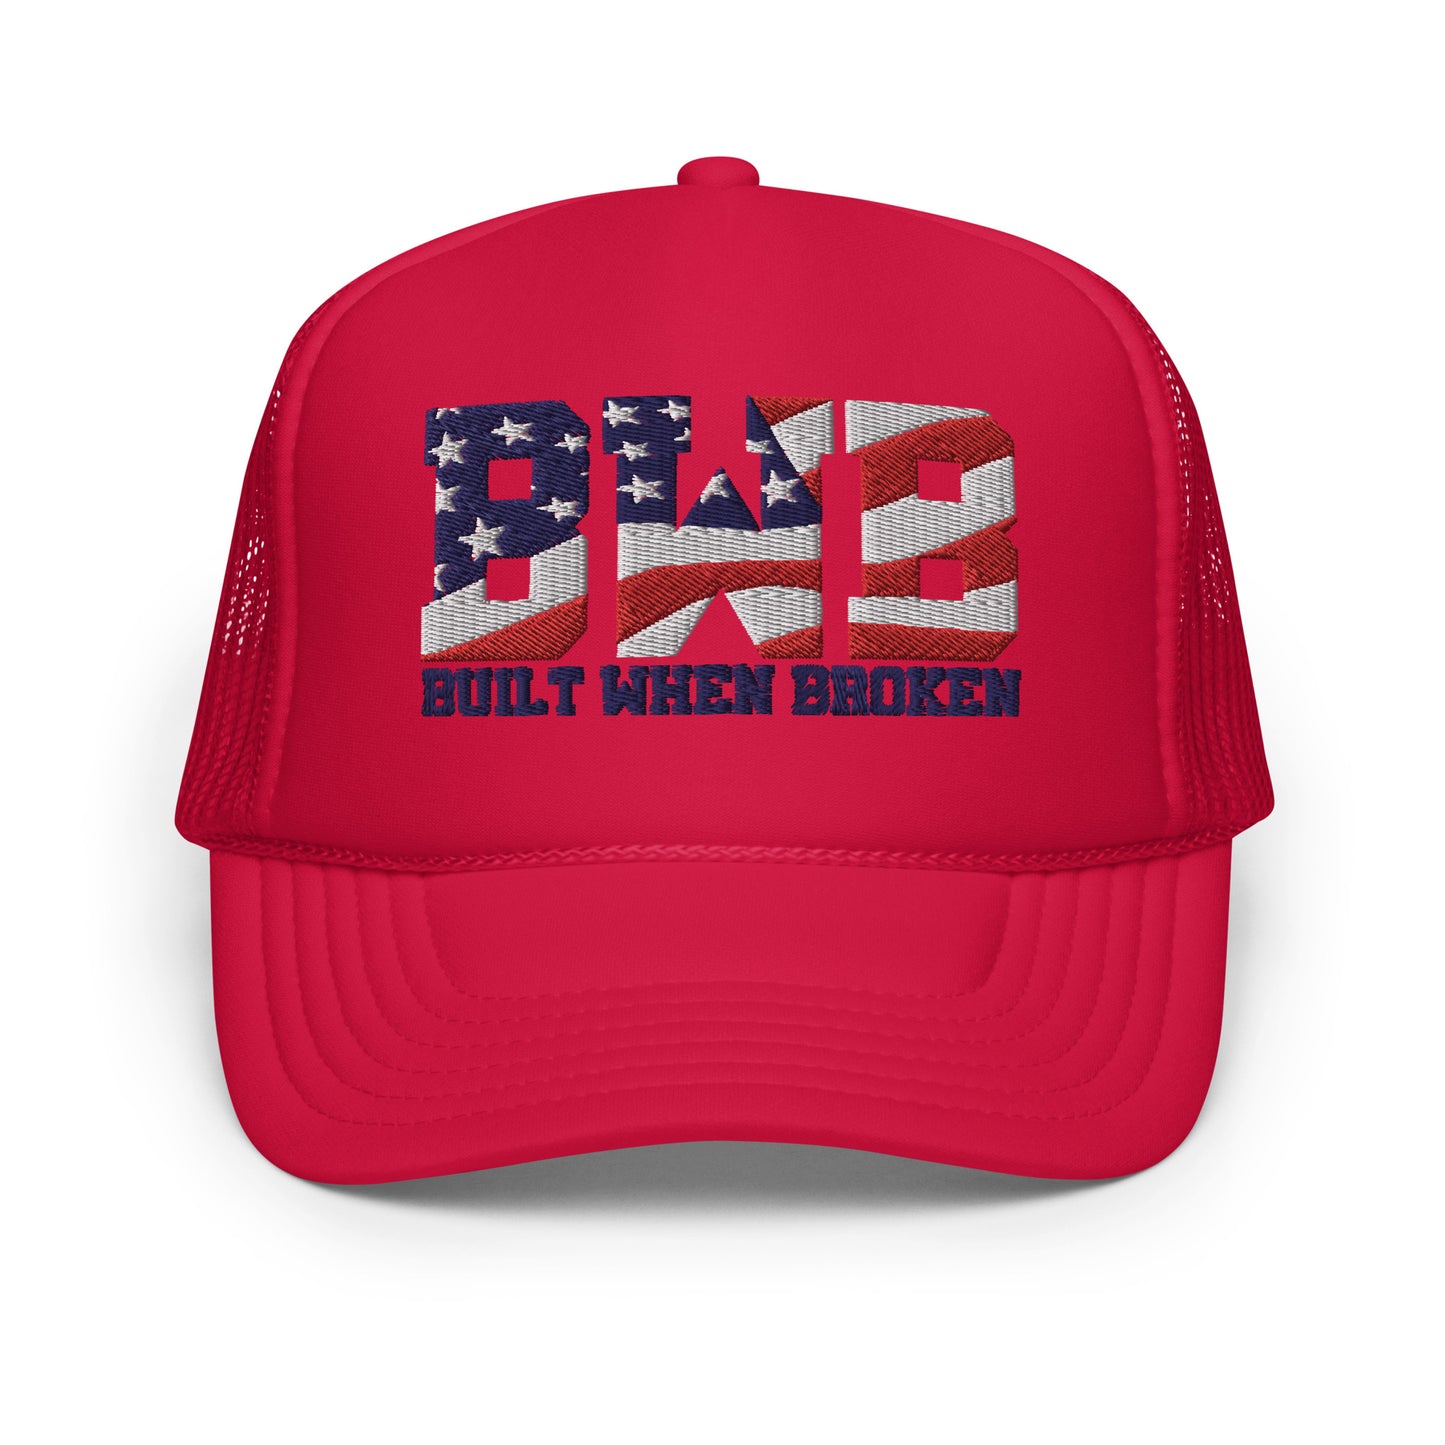 July 4th Trucker Hat